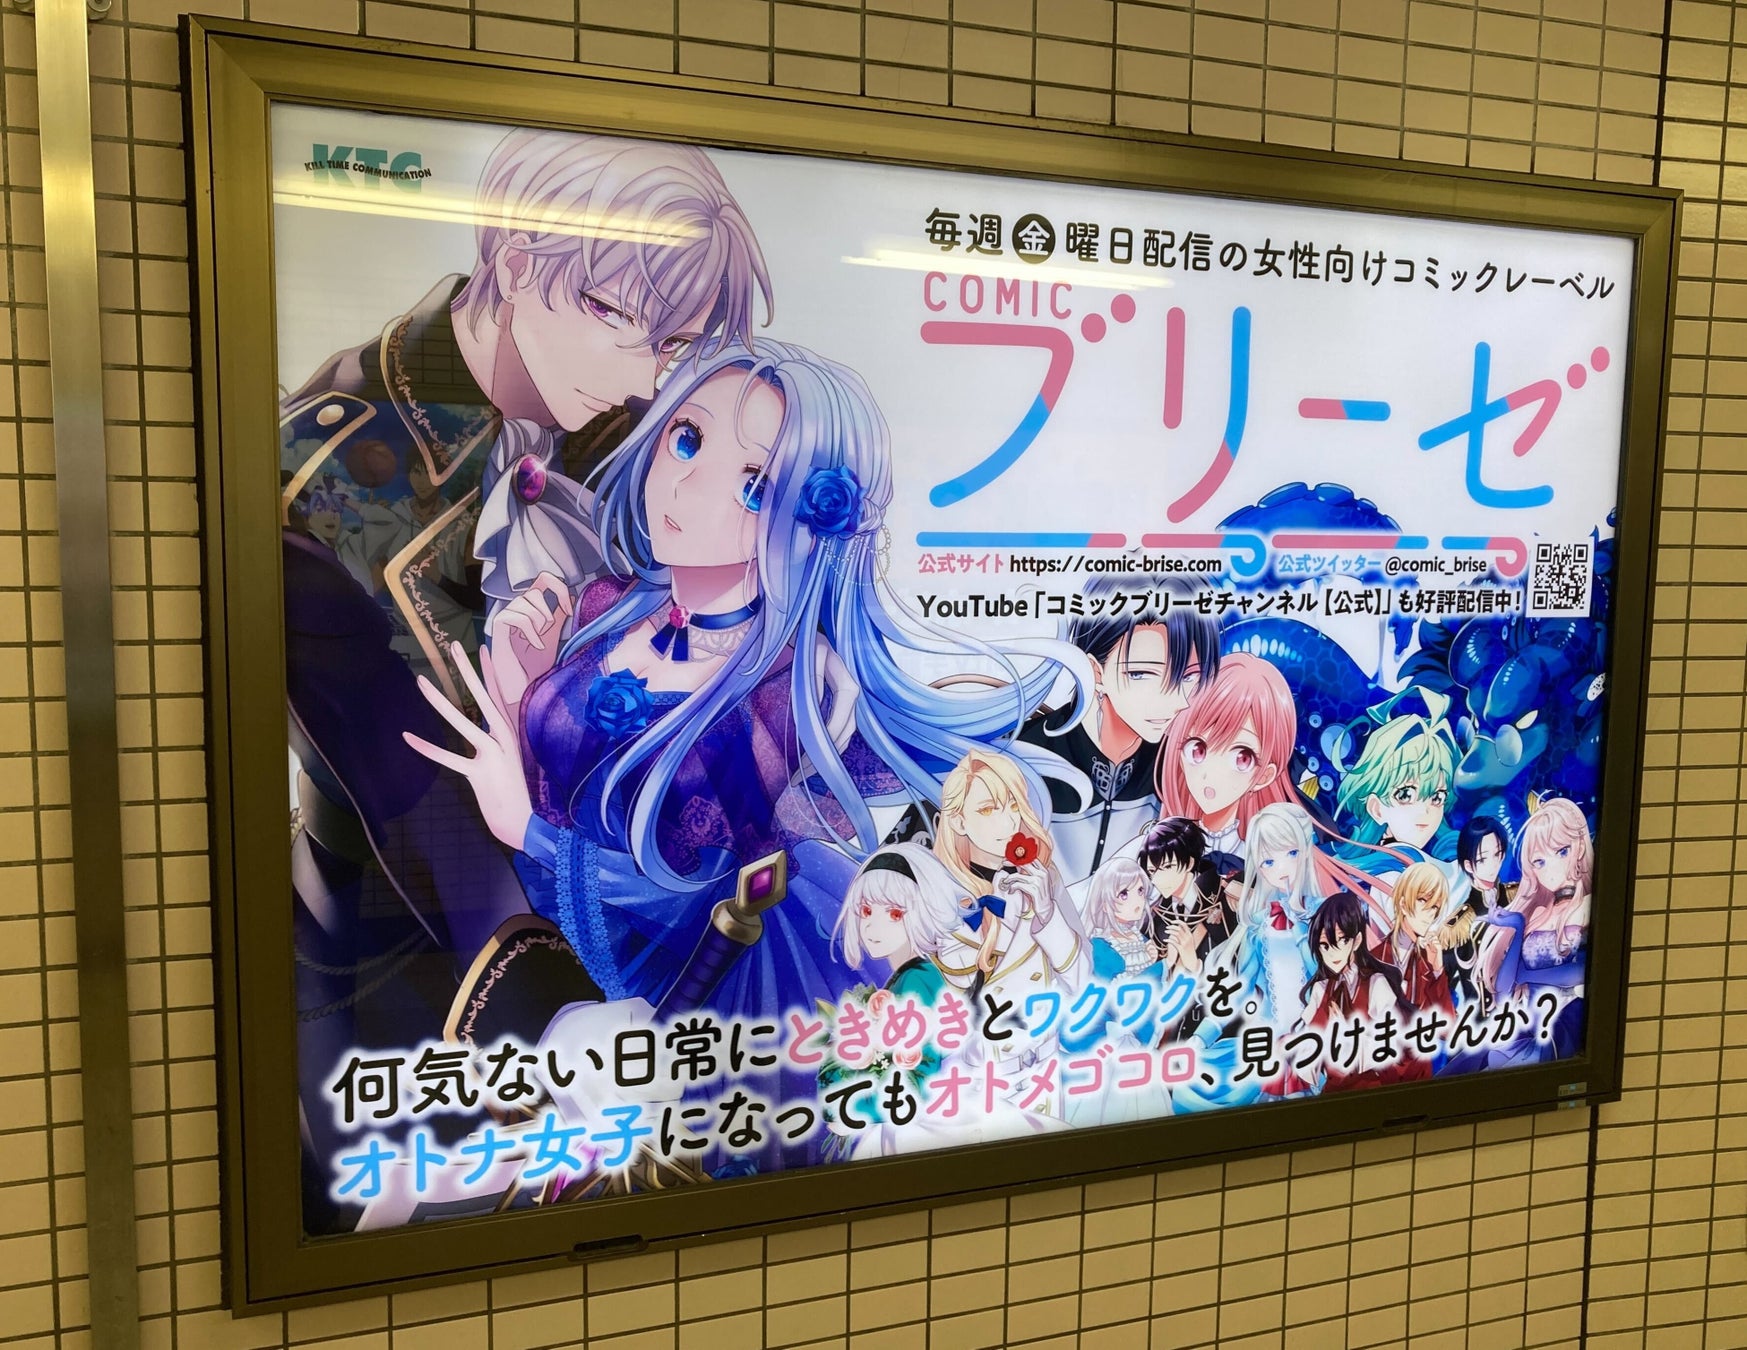 東京メトロ丸ノ内線池袋駅コンコースにある「コミックブリーゼ」電照看板のデザインを変更いたしました。